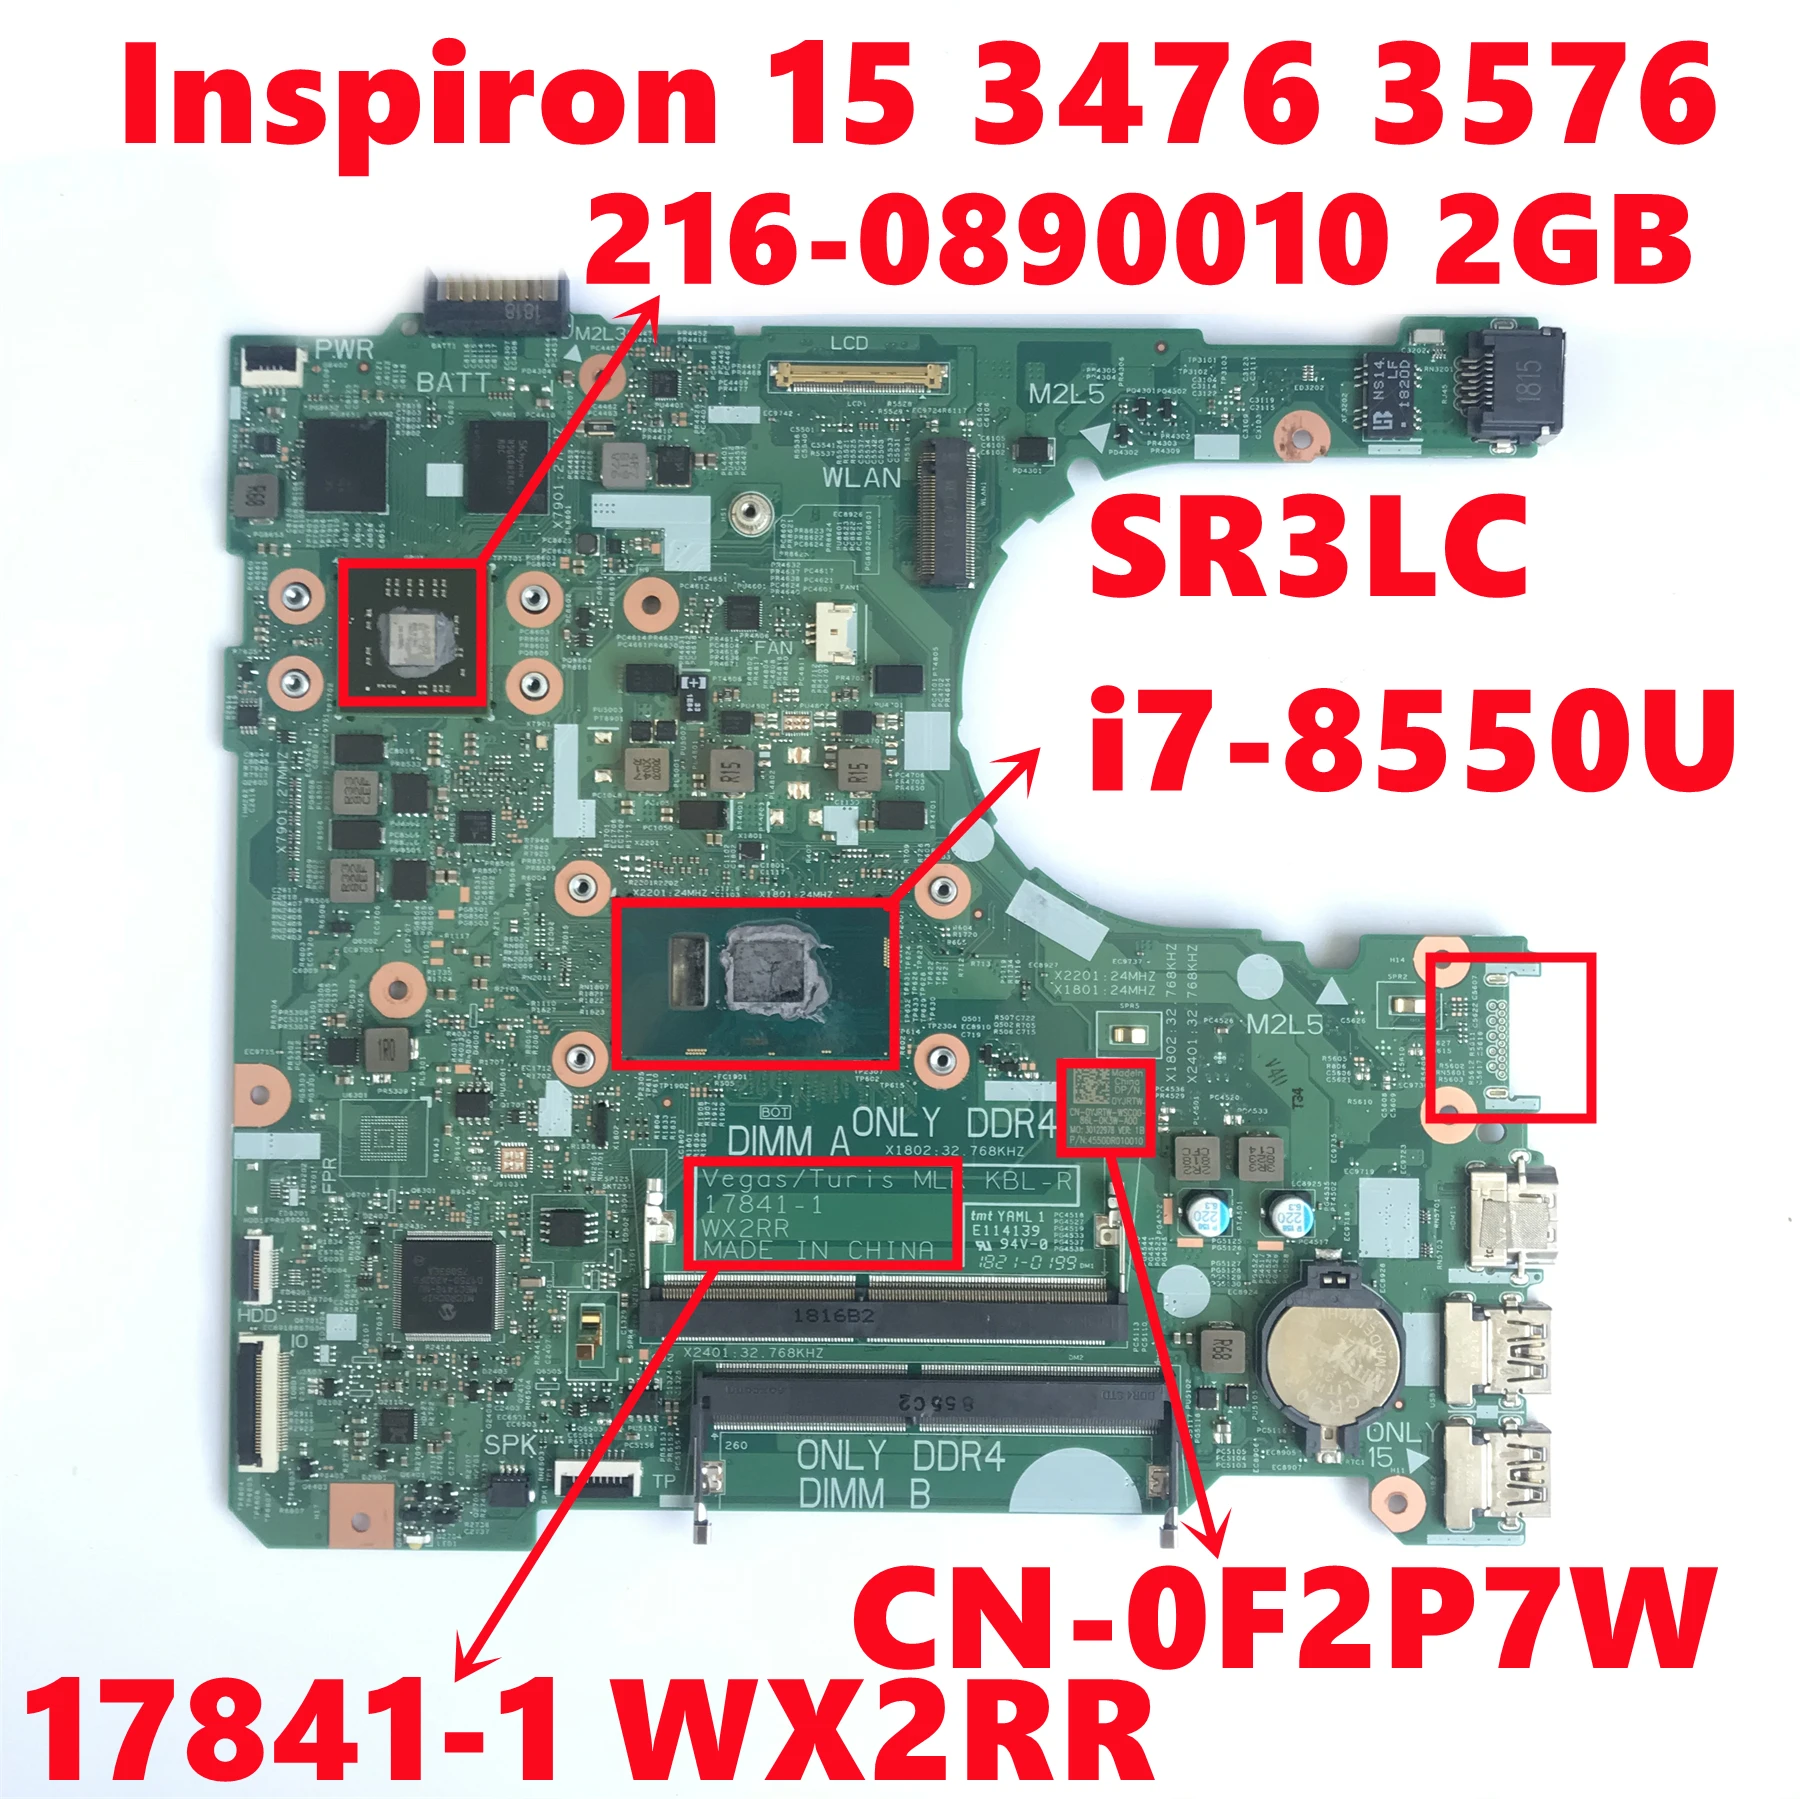 

CN-0F2P7W 0F2P7W F2P7W For Dell Inspiron 15 3476 3576 Laptop Motherboard 17841-1 WX2RR W/ i7-8550U 216-0890010 100% Fully Tested